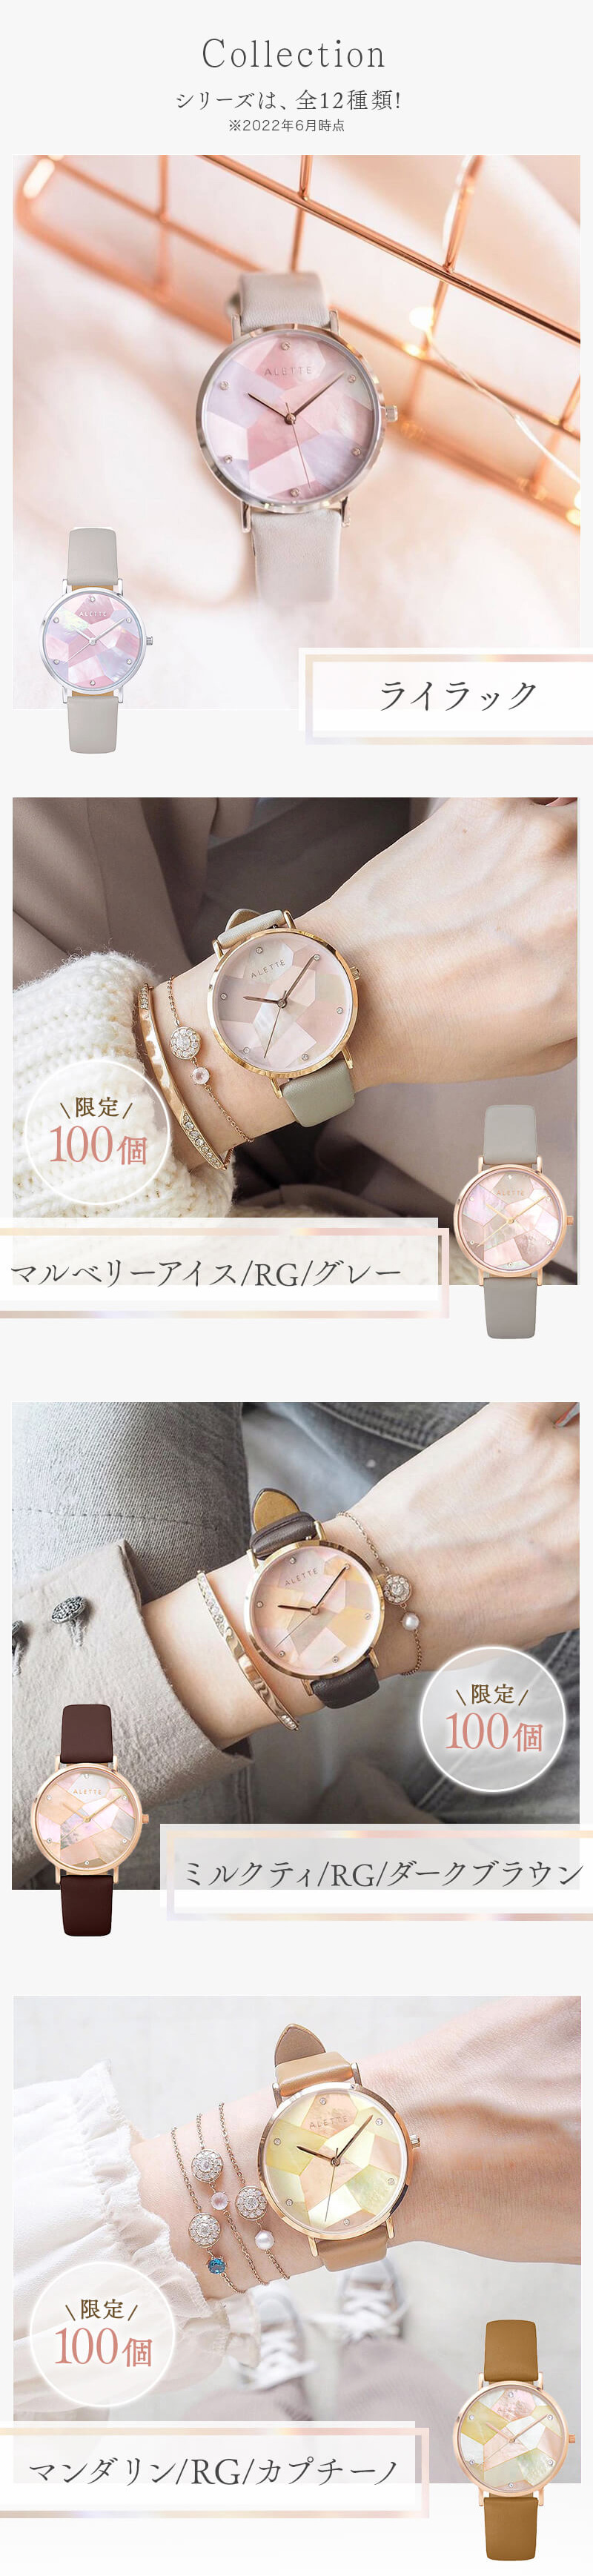 【楽天市場】【11/14再々入荷】腕時計 レディース アレットブラン ALETTE BLANC レディース腕時計 リリーコレクション